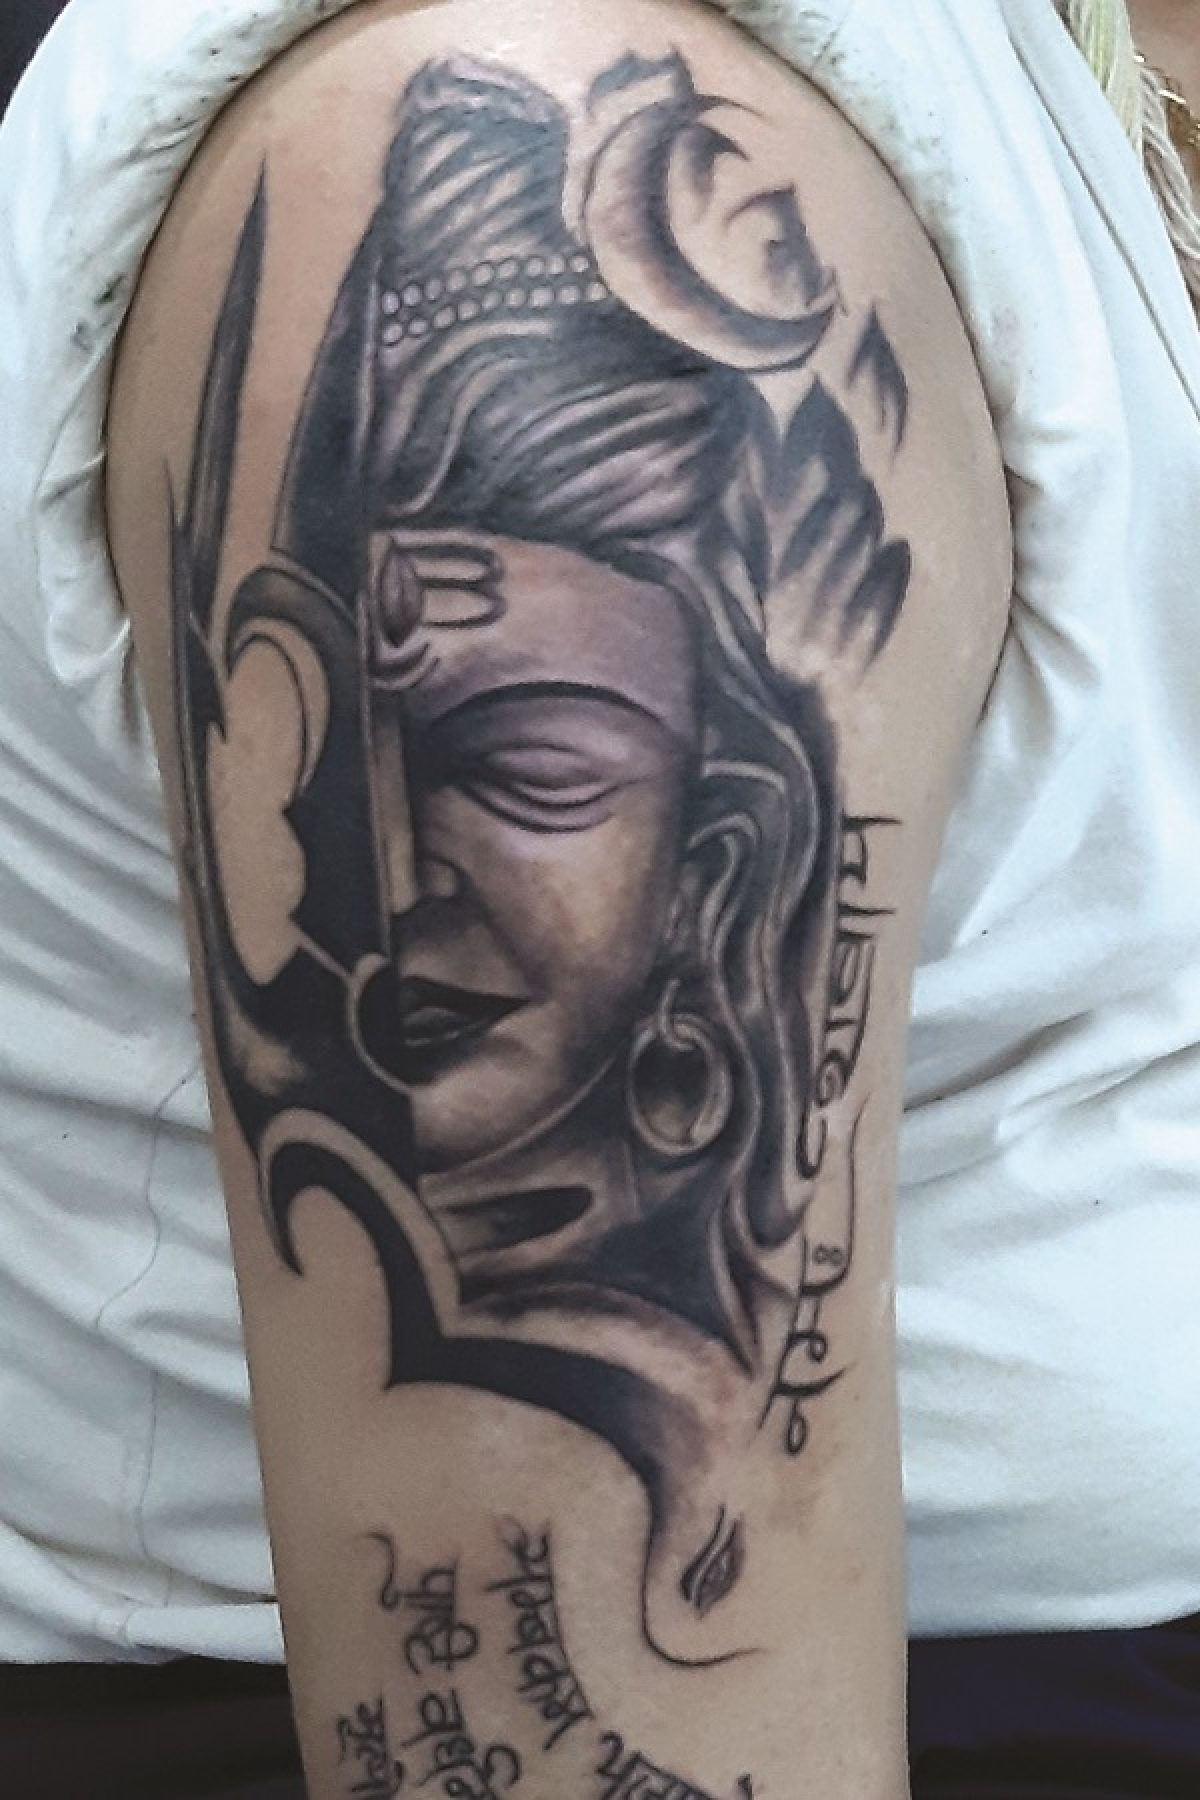 nandi talks on Twitter Lord Shiva tattoo  Mahadev tattoo  Shiv ji tattoo   arm tattoo  bFor more info visithttpstcoVLNPMaD5Cb  httpstcoSVMGxNbTPq  Twitter